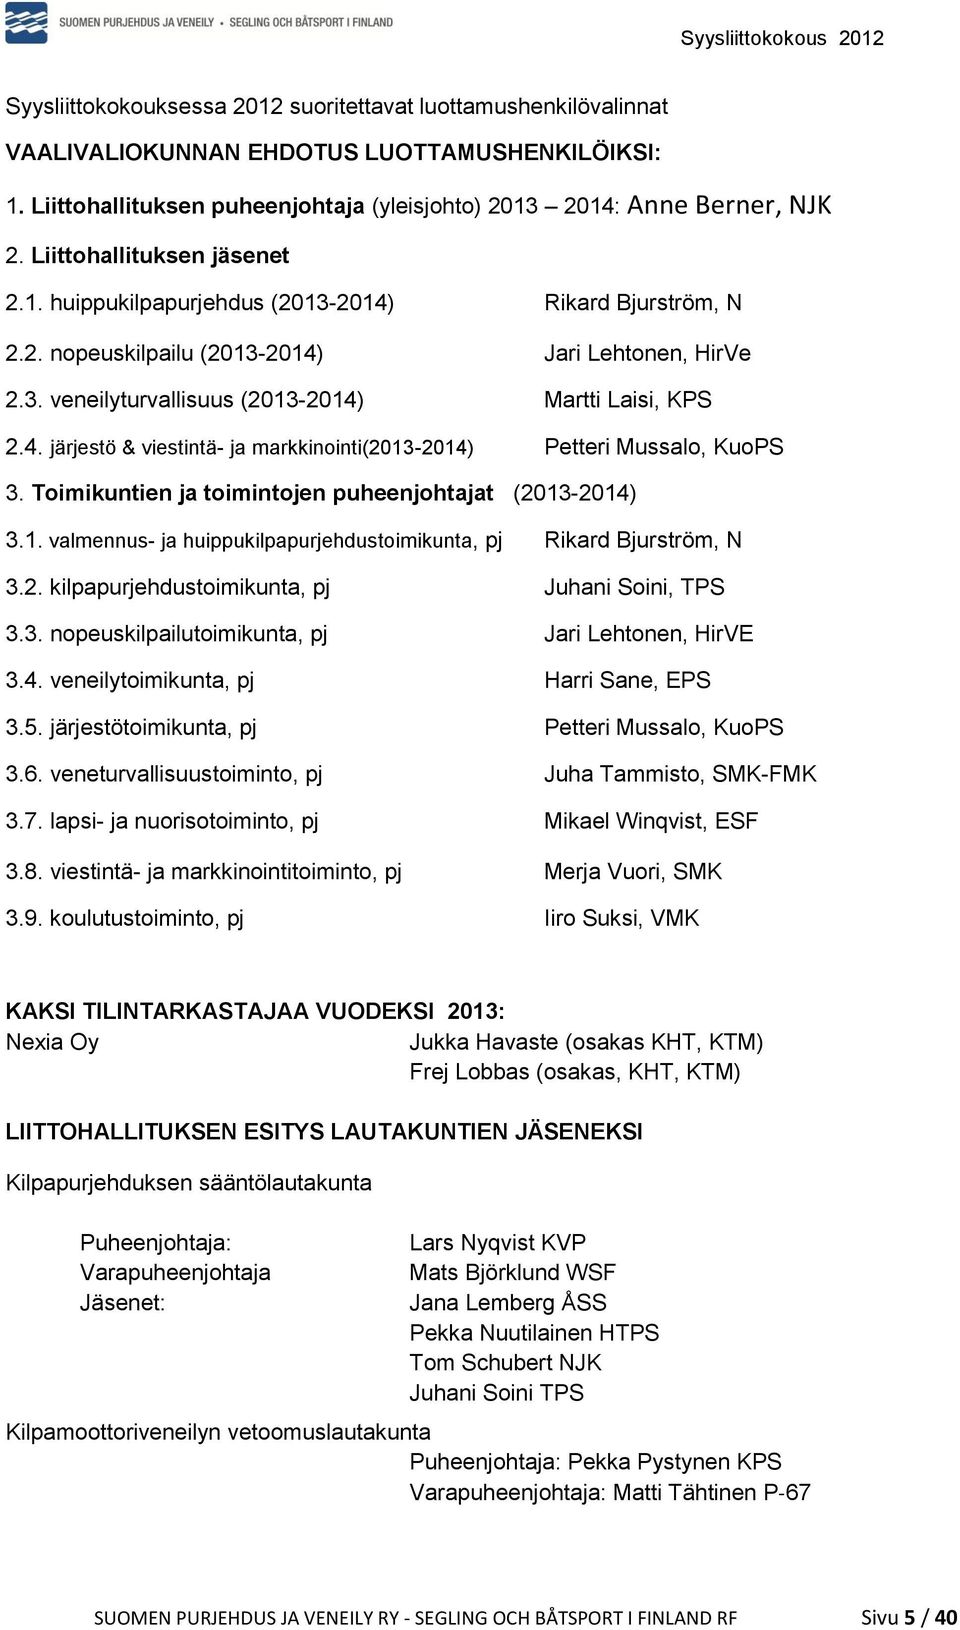 Toimikuntien ja toimintojen puheenjohtajat (2013-2014) 3.1. valmennus- ja huippukilpapurjehdustoimikunta, pj Rikard Bjurström, N 3.2. kilpapurjehdustoimikunta, pj Juhani Soini, TPS 3.3. nopeuskilpailutoimikunta, pj Jari Lehtonen, HirVE 3.